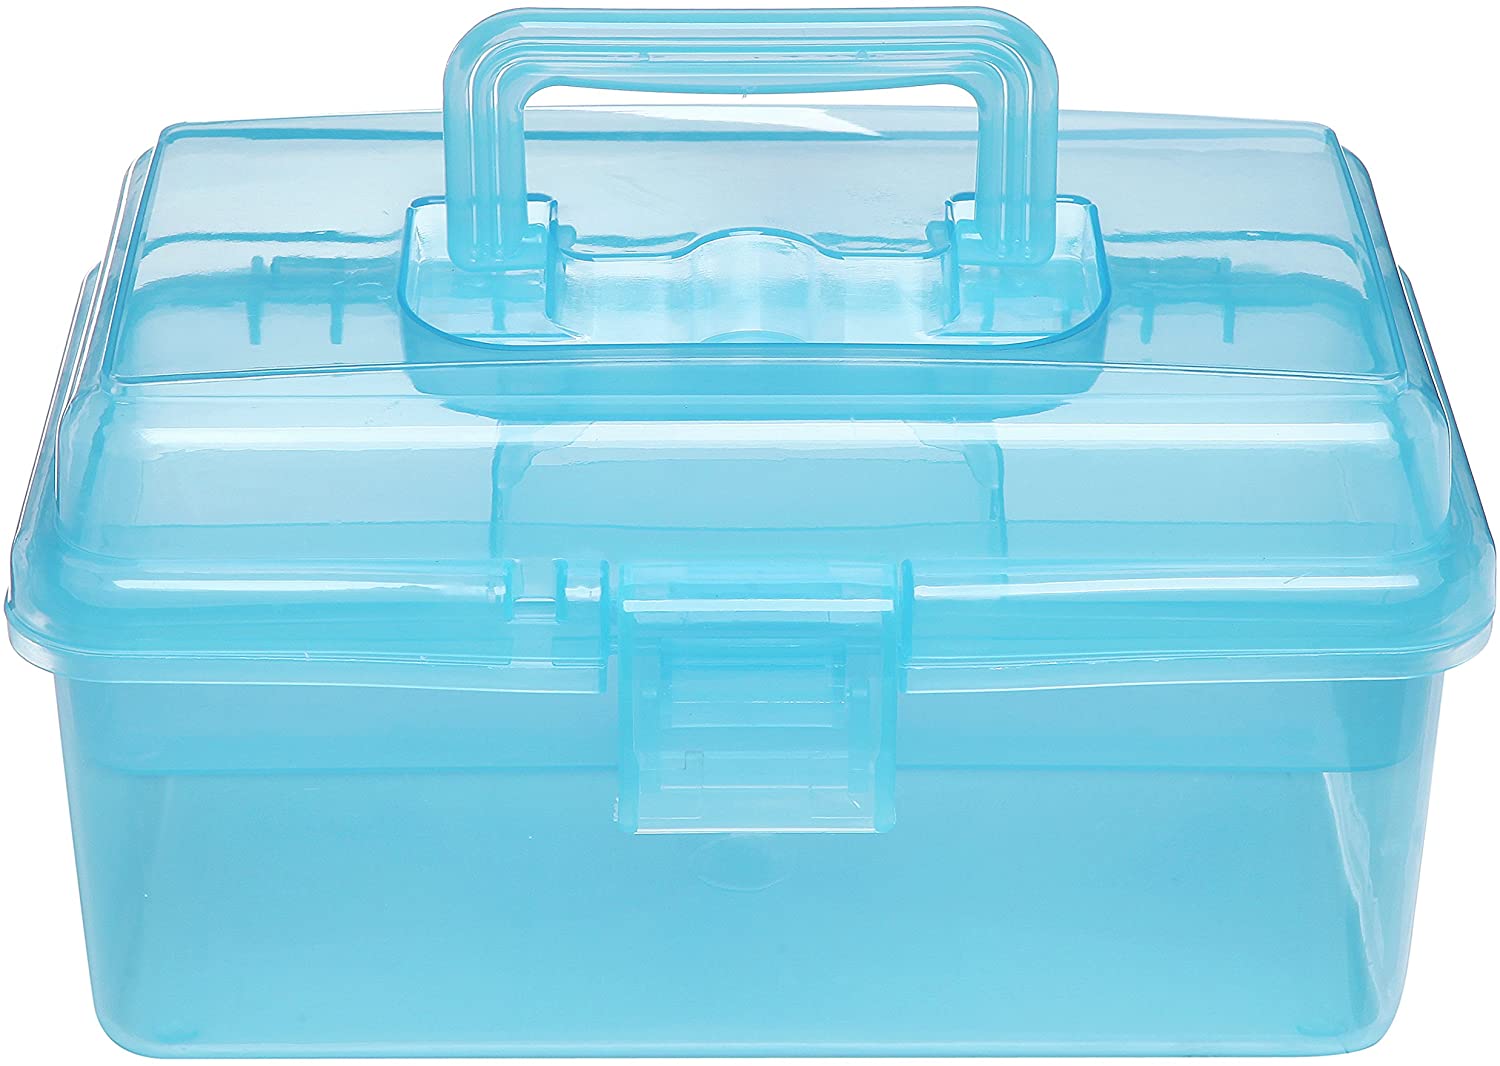 Boîte de premiers soins en plastique transparent portable avec poignée